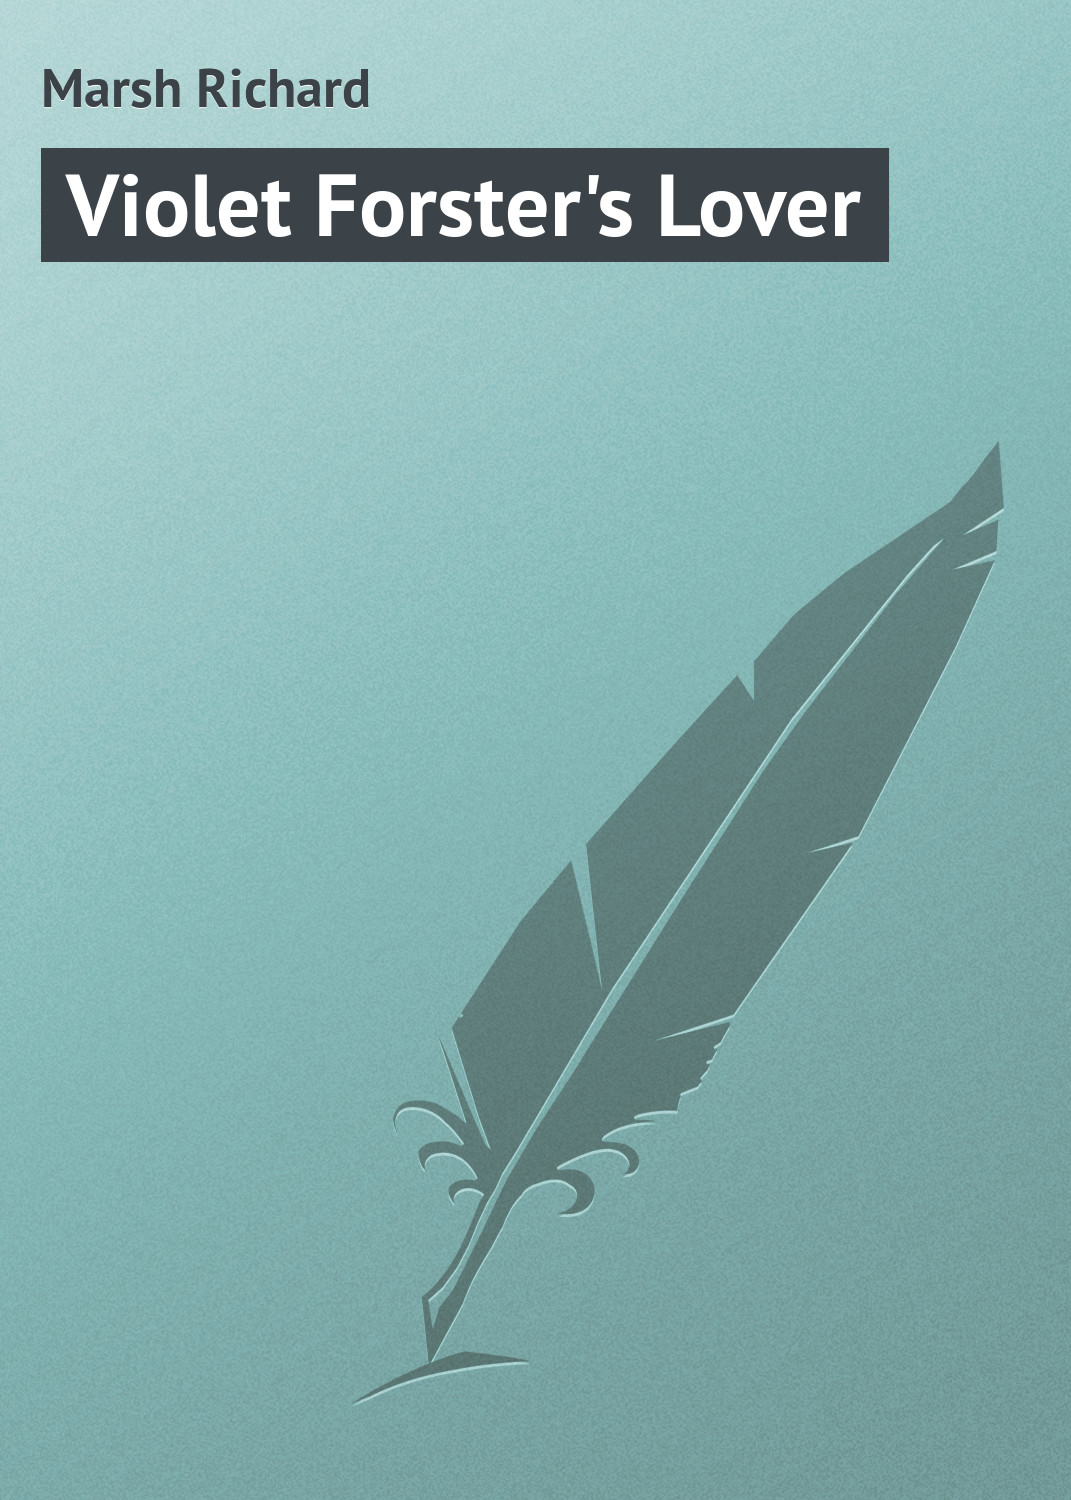 Книга Violet Forster's Lover из серии , созданная Richard Marsh, может относится к жанру Иностранные языки, Зарубежная классика. Стоимость электронной книги Violet Forster's Lover с идентификатором 23156675 составляет 5.99 руб.